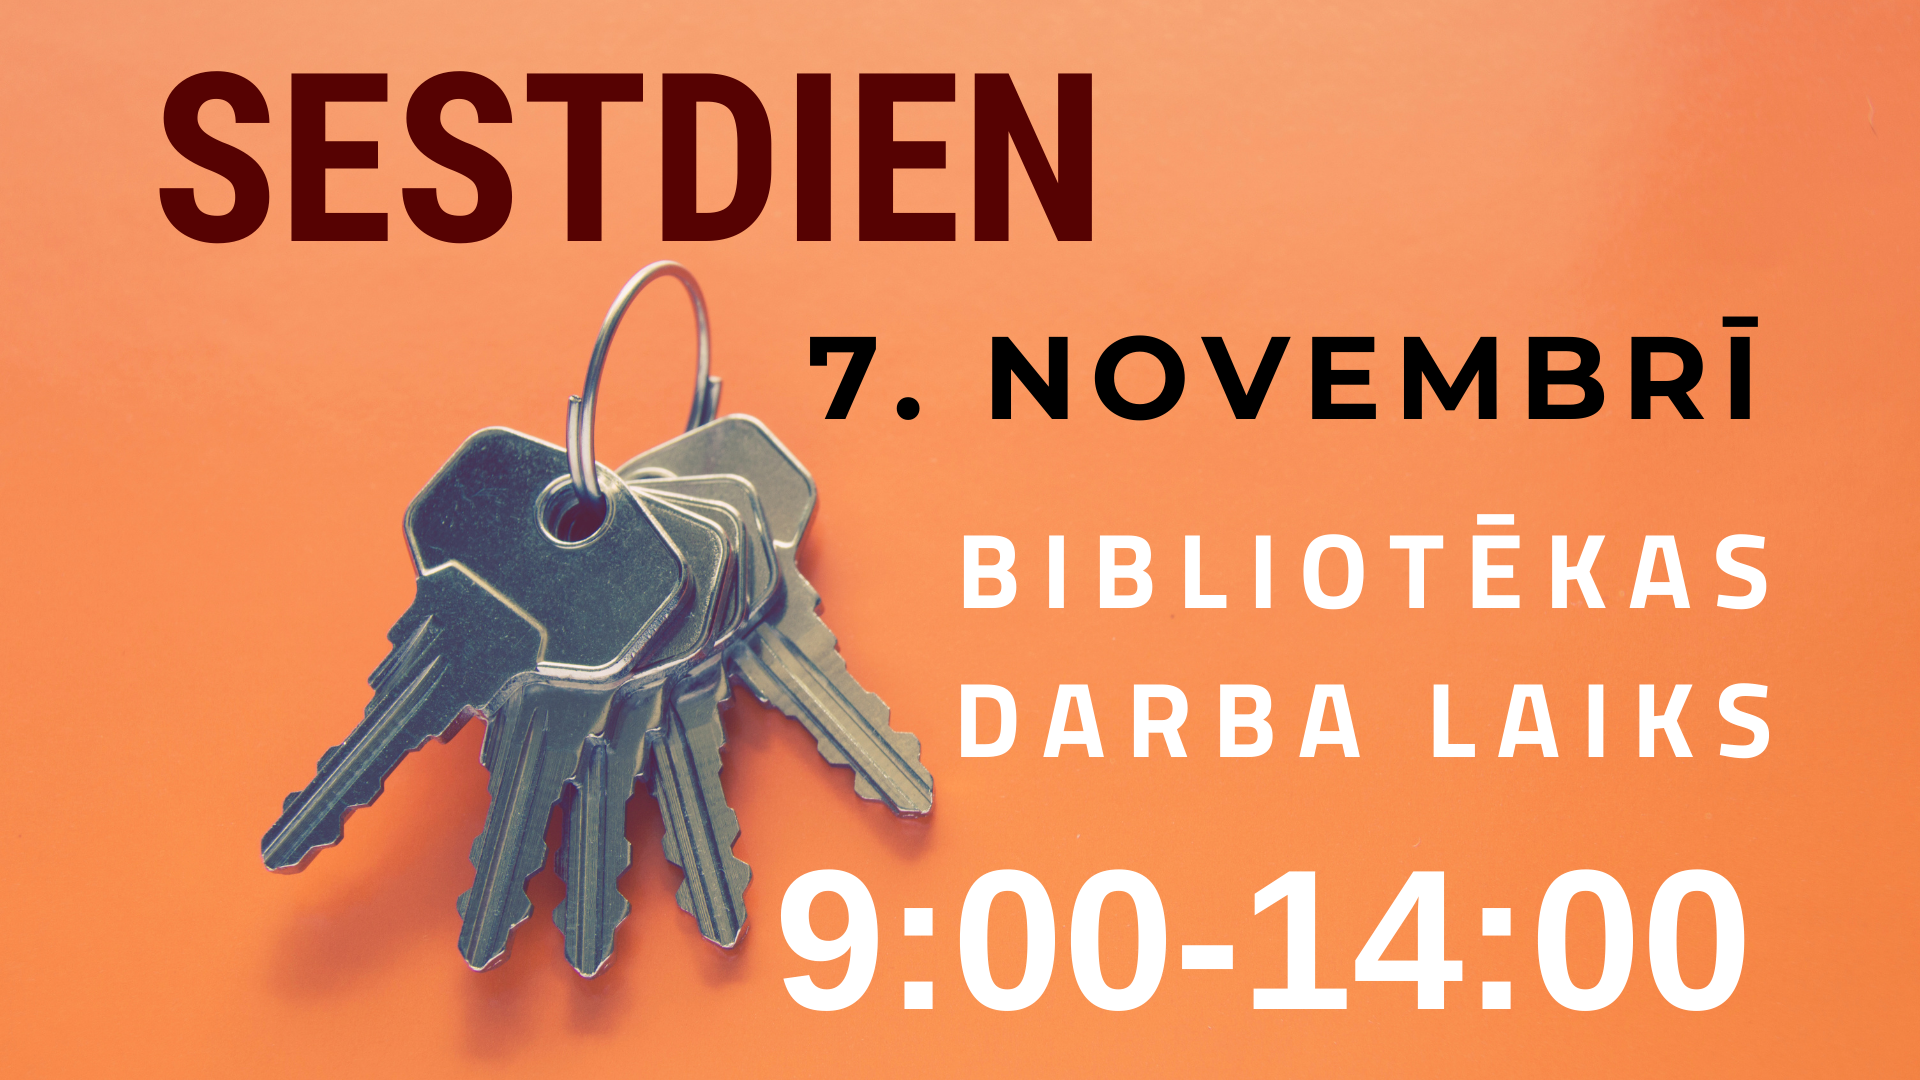 Sestdien, 7. novembrī, bibliotēka lasītājiem atvērta no plkst. 9.00 līdz 14.00